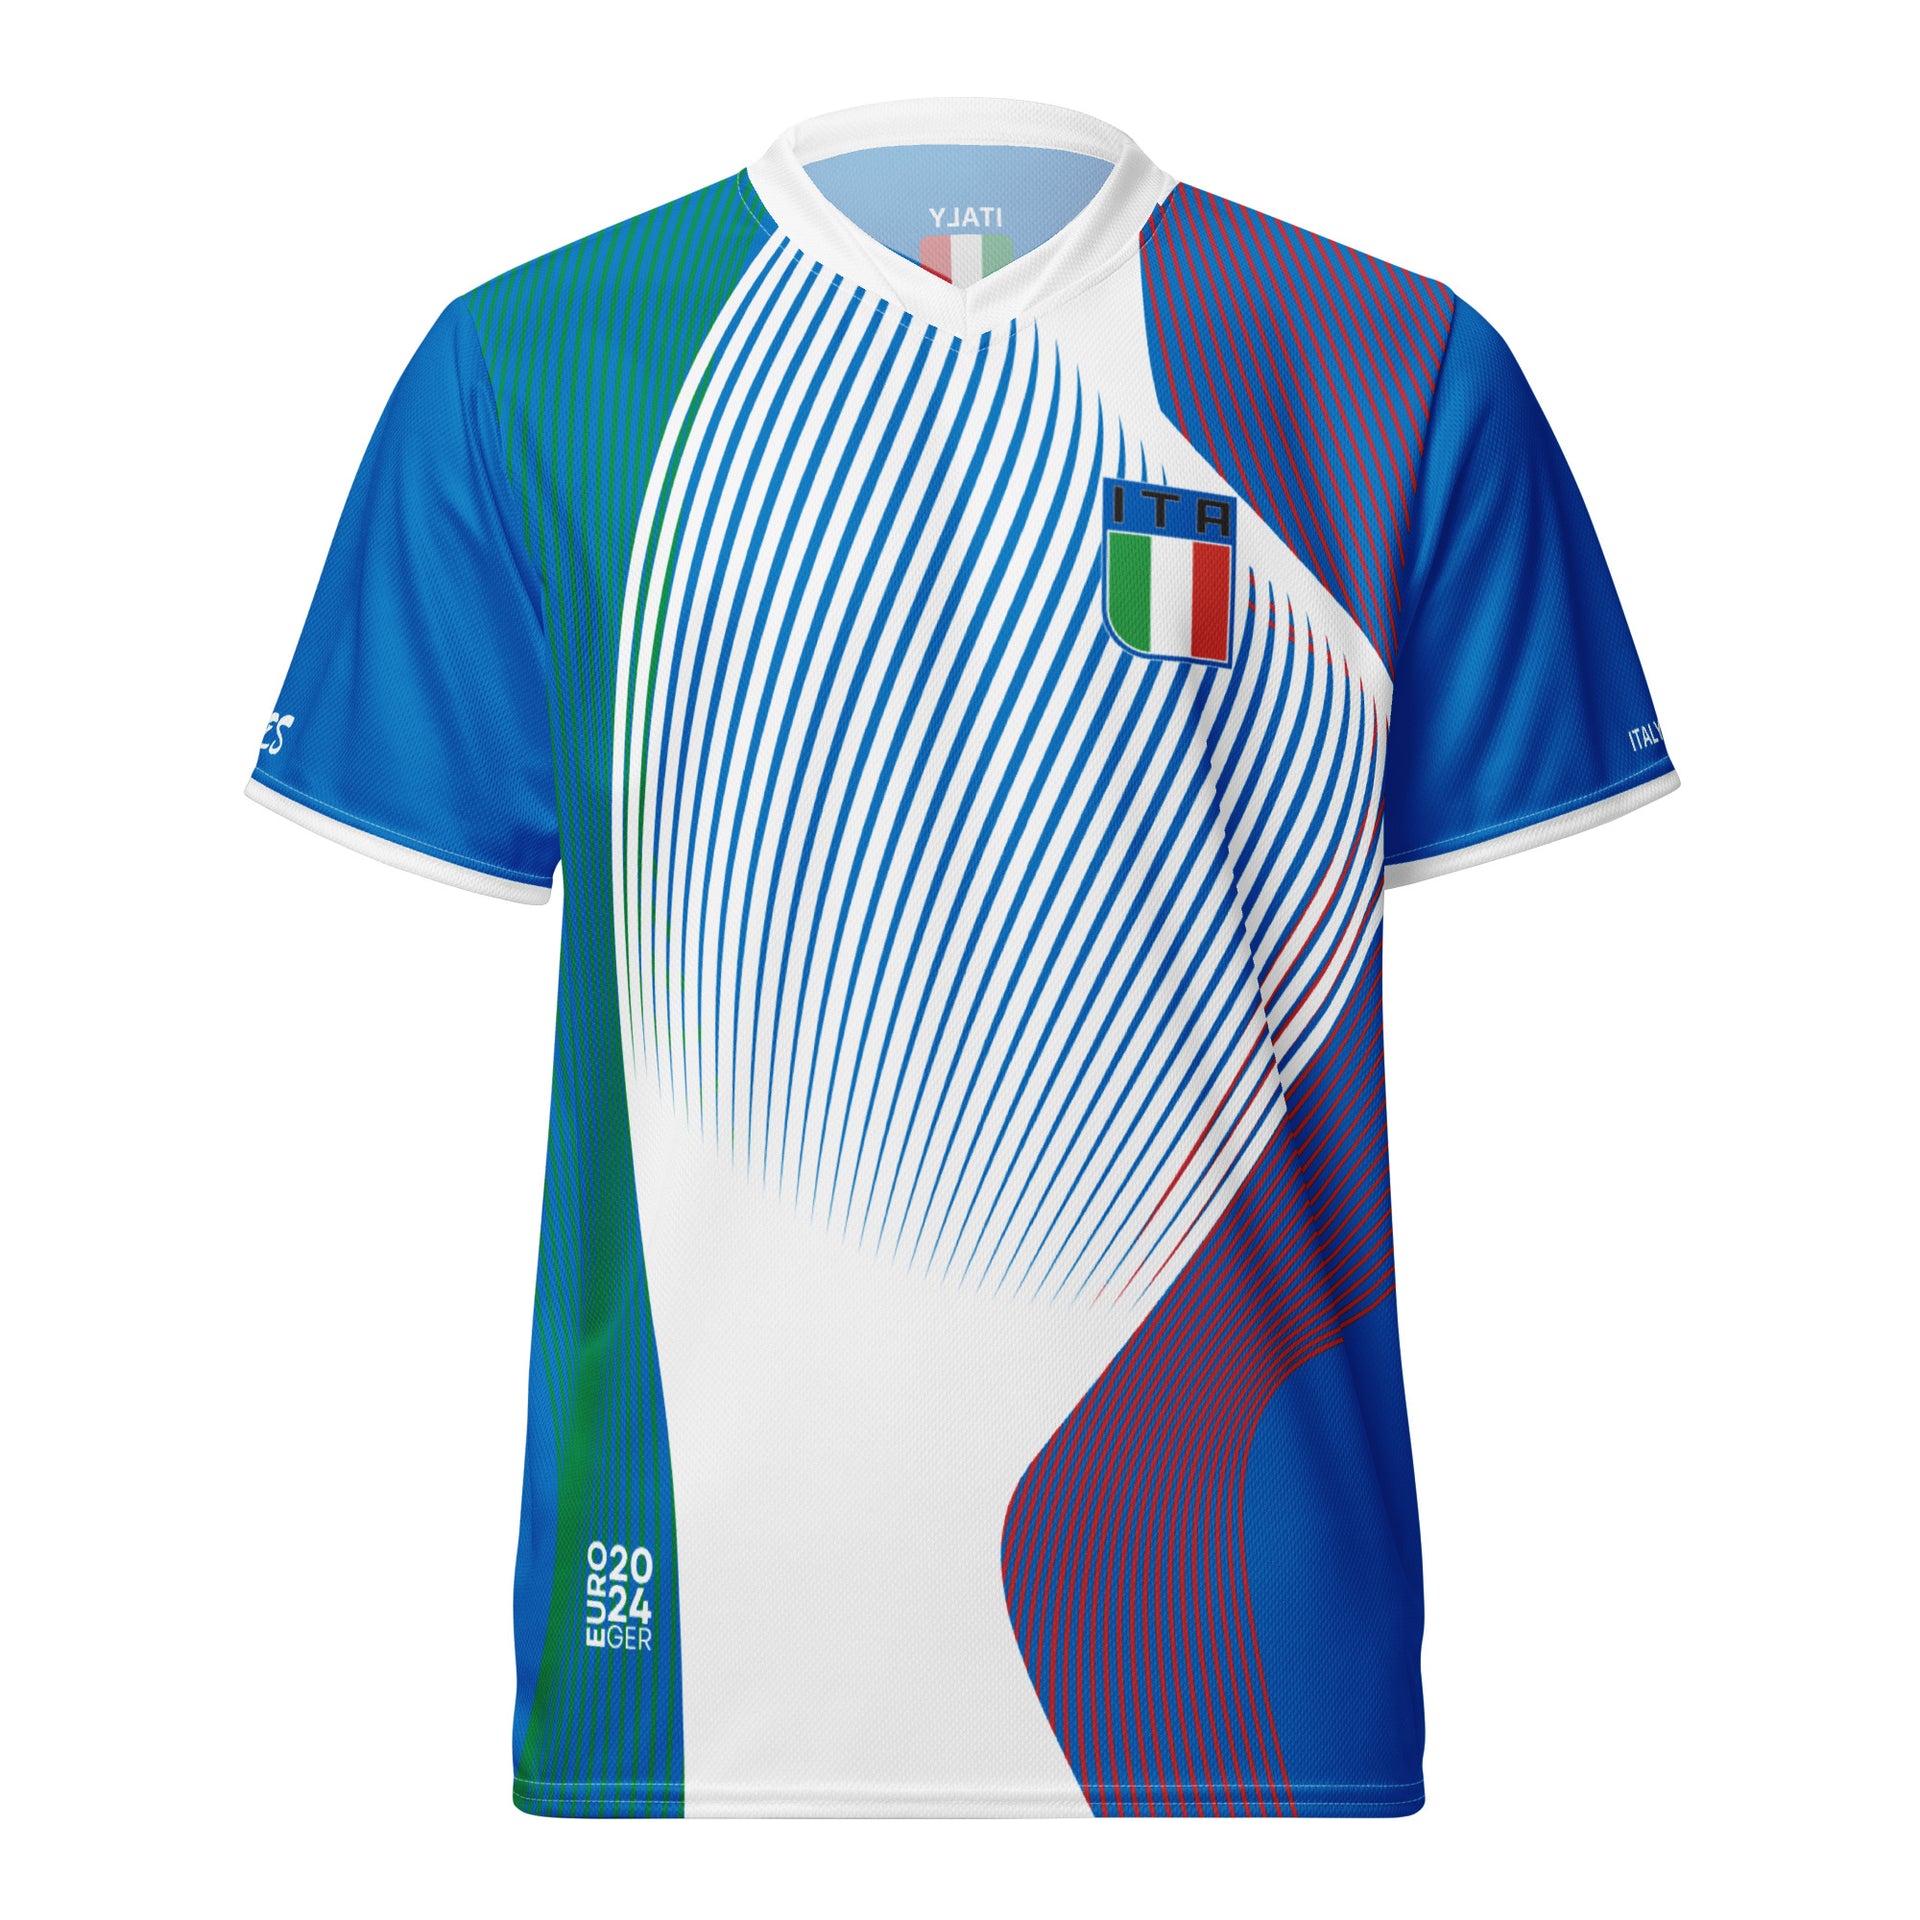 Italy Trikot Blau - EURO2024